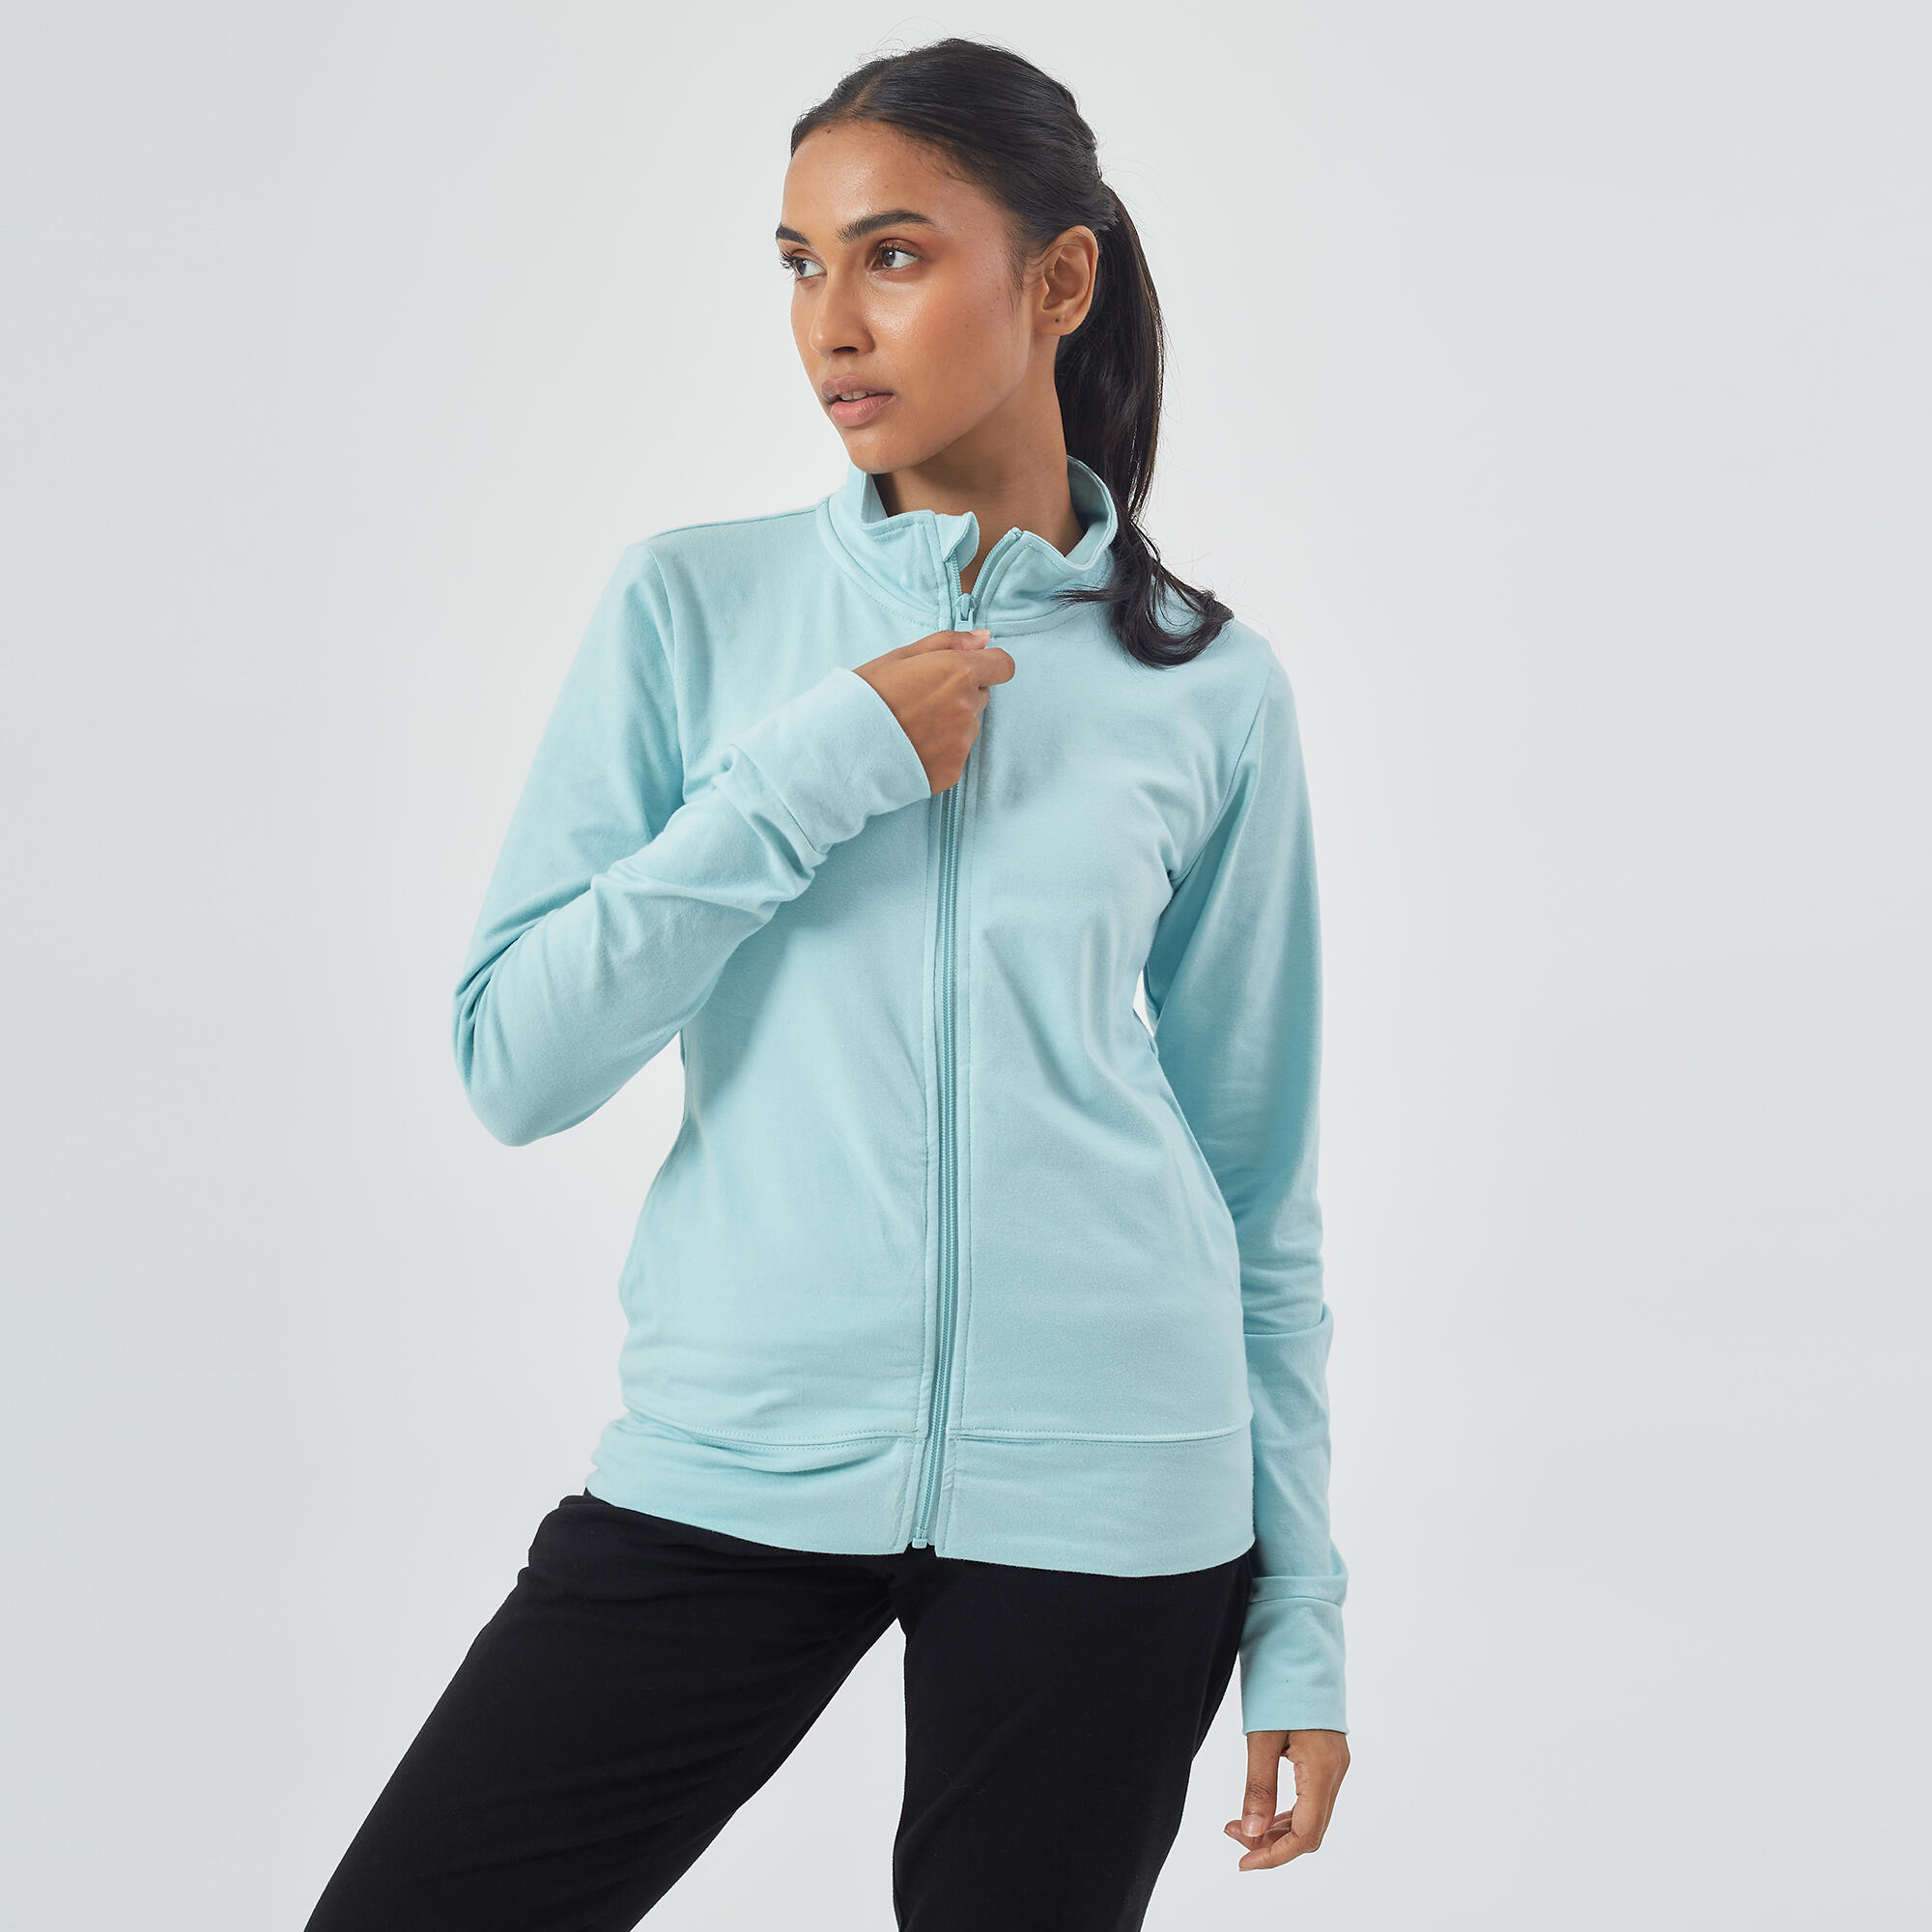 Women Gym Cotton Blend Zip Sweatshirt With Pocket 520 -Green